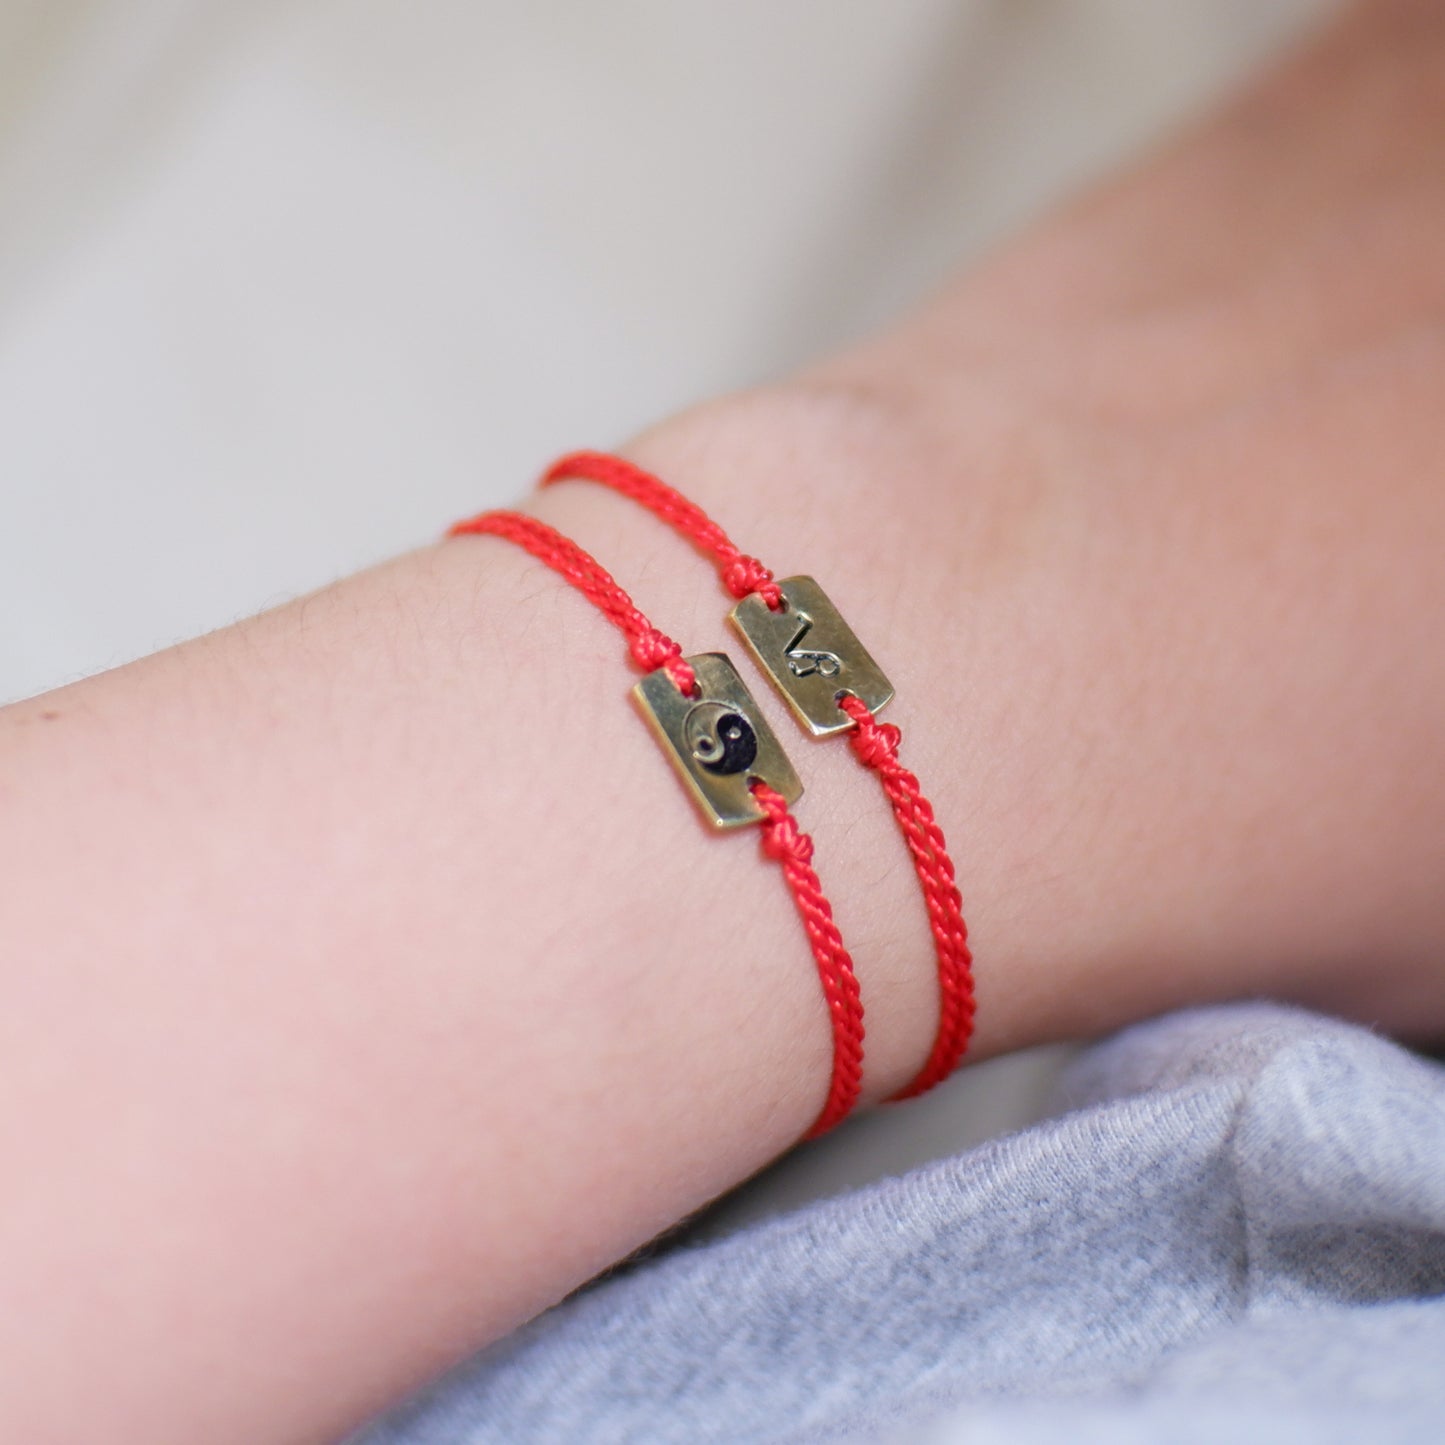 The Red Line Zodiac Sign Easy-Wear Bracelet